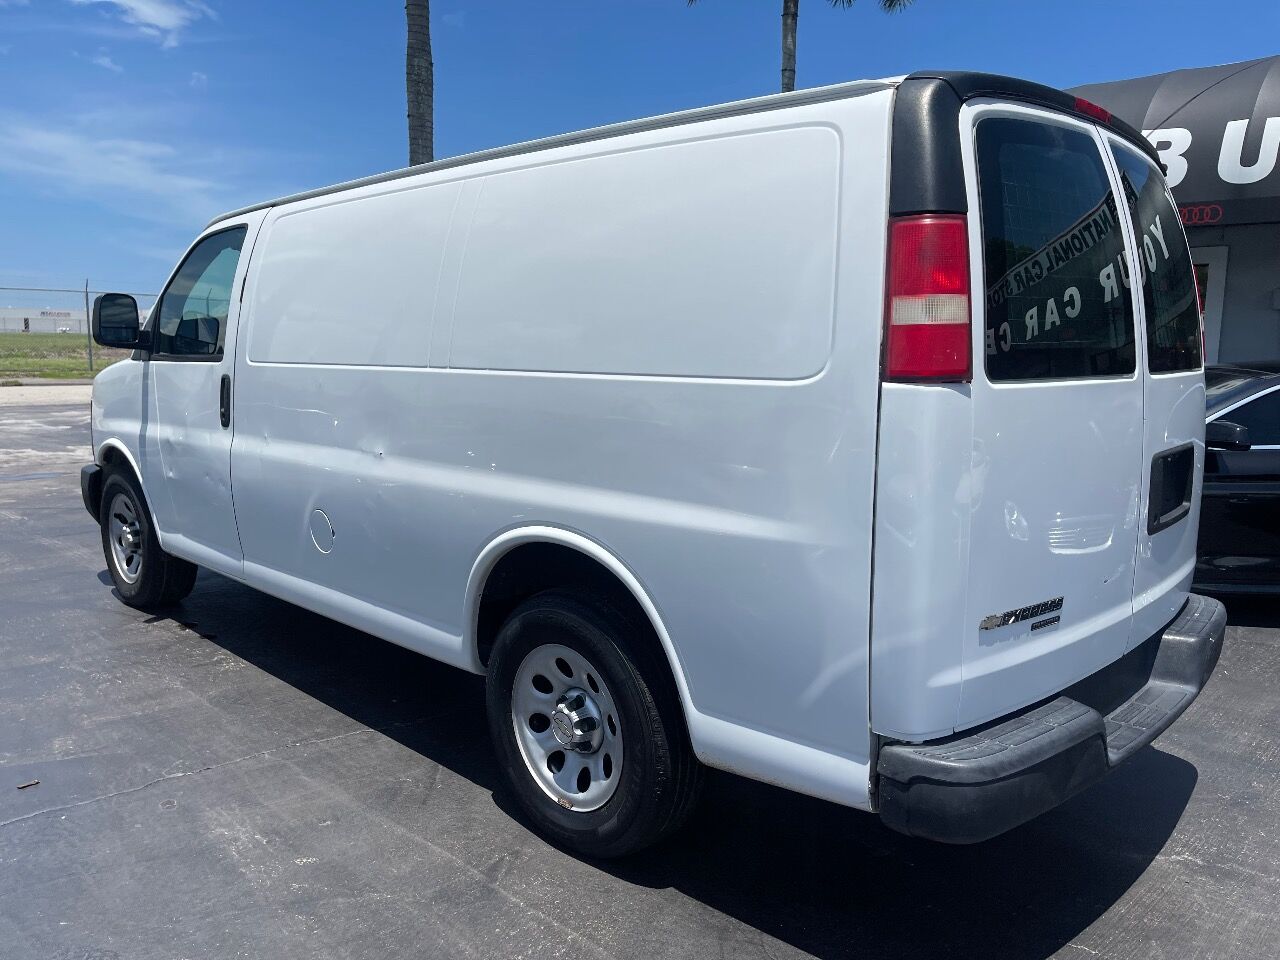 2014 CHEVROLET Express Van - $14,900